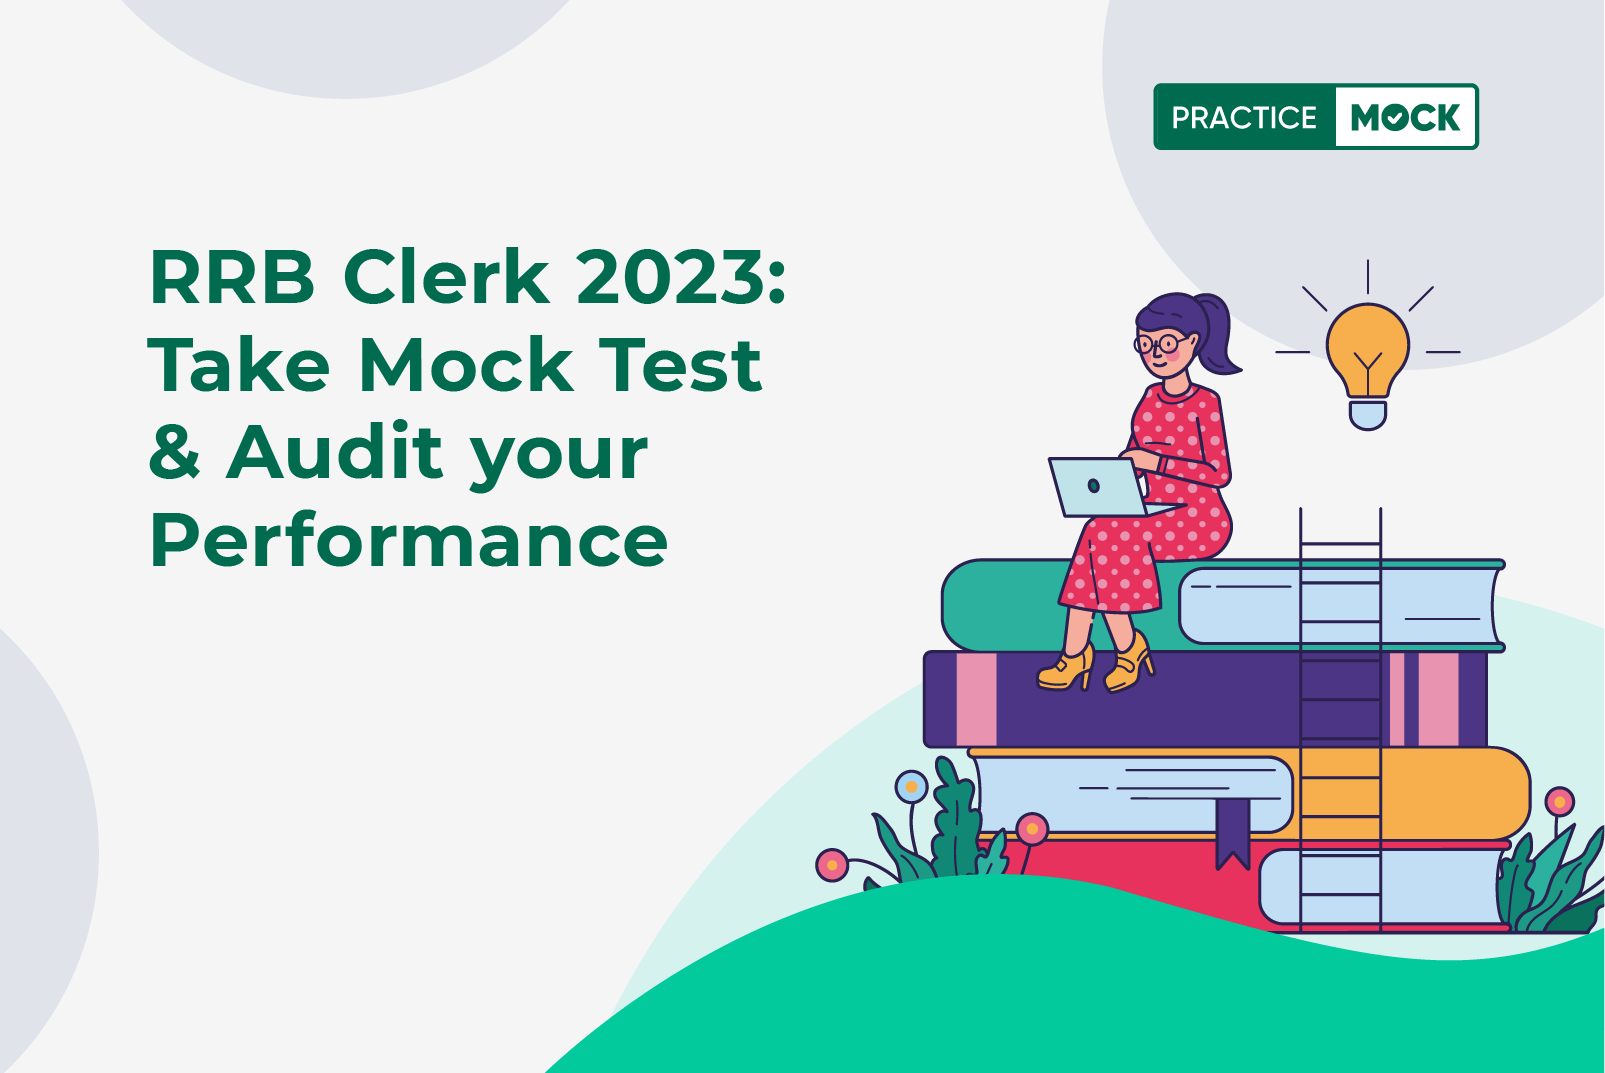 RRB Clerk 2023 Take Mock Test & Audit Your Performance